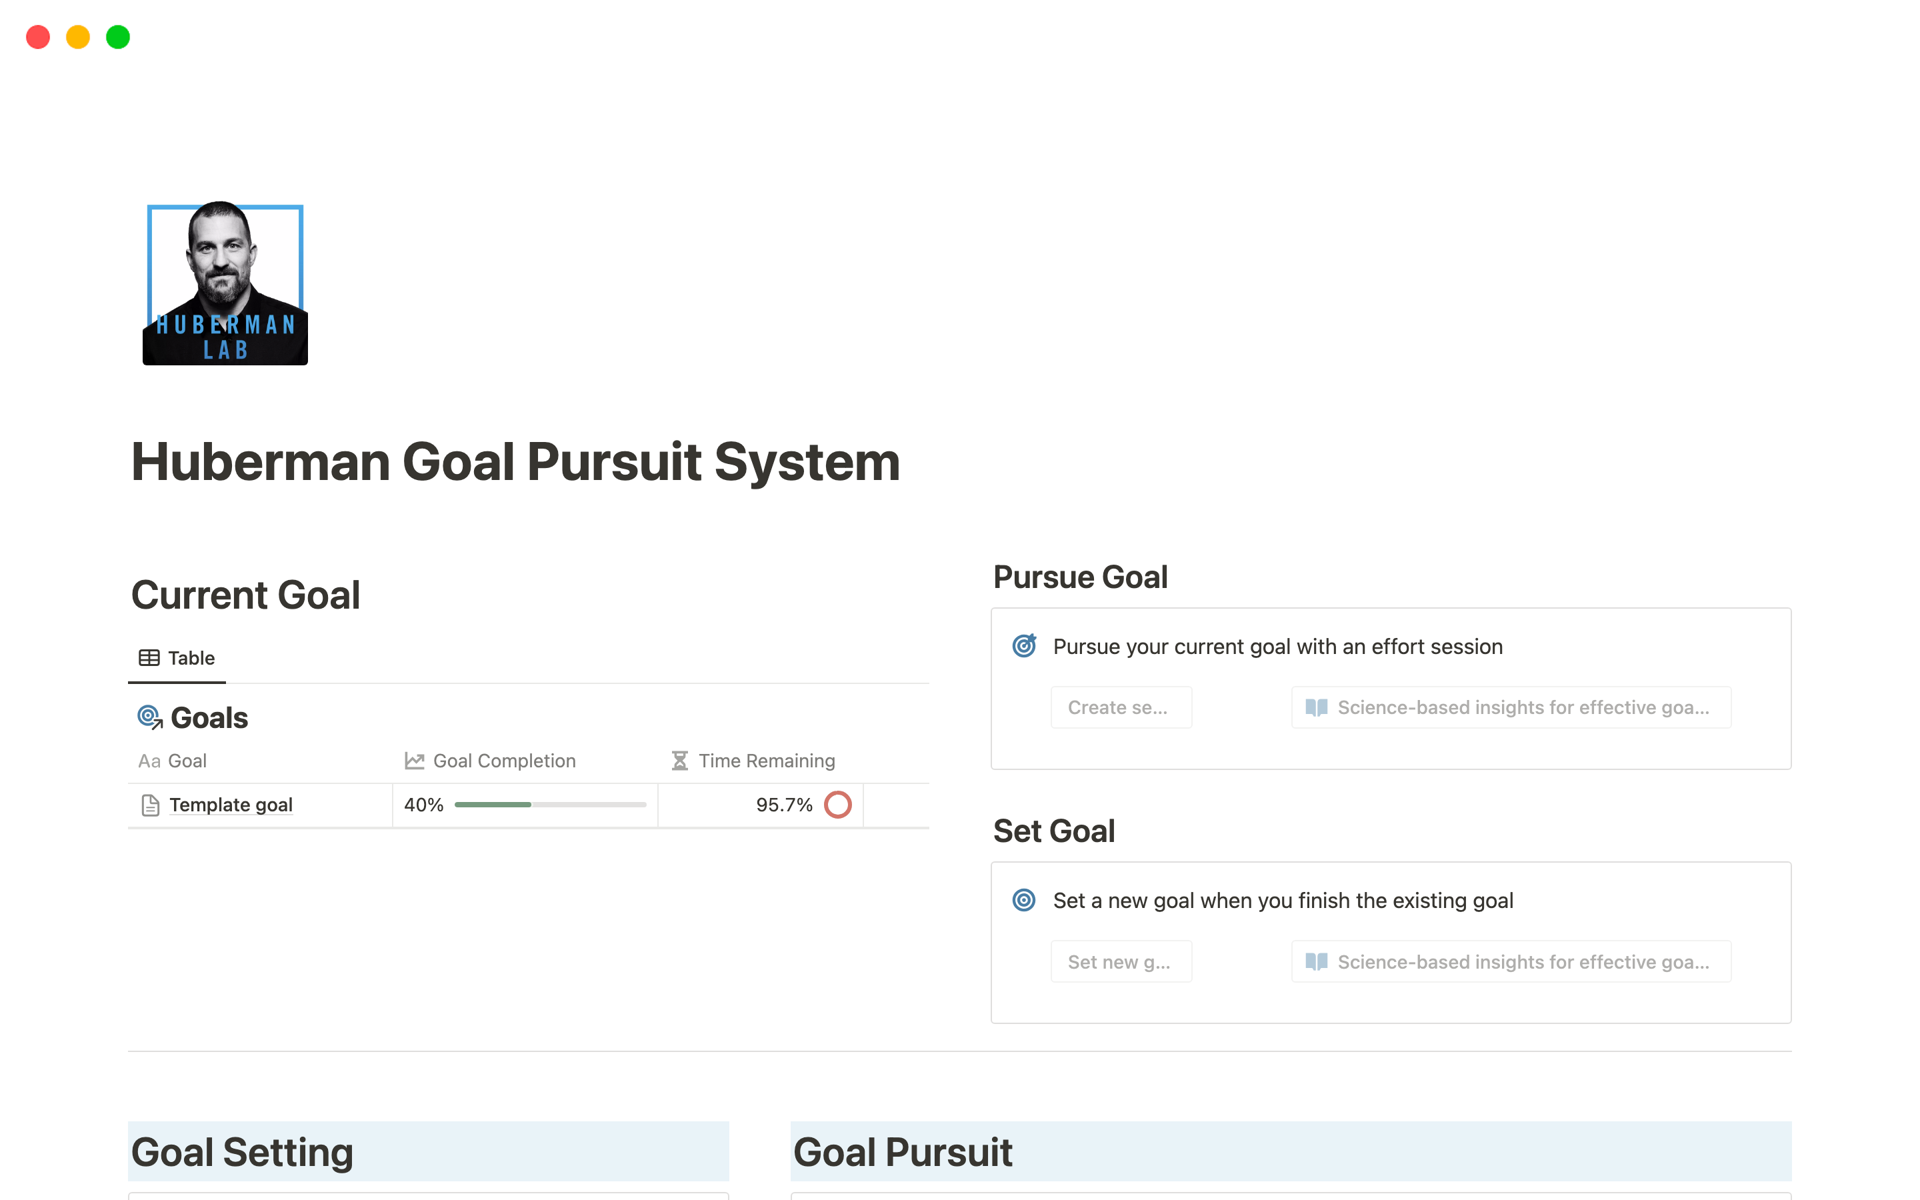 Uma prévia do modelo para Huberman Goal Pursuit System